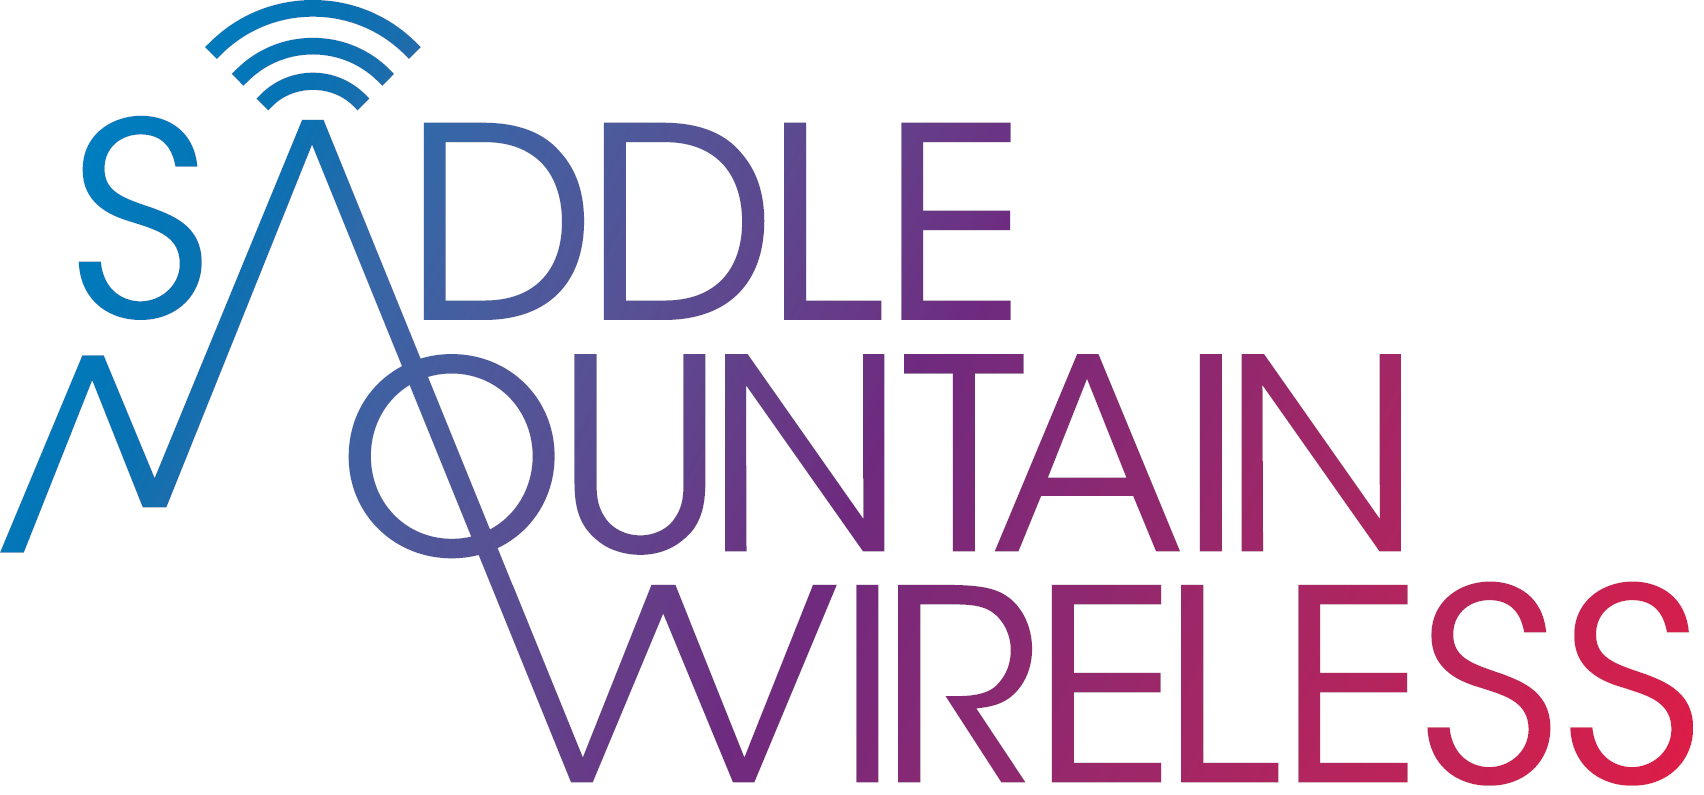 Saddle Mountain Wireless